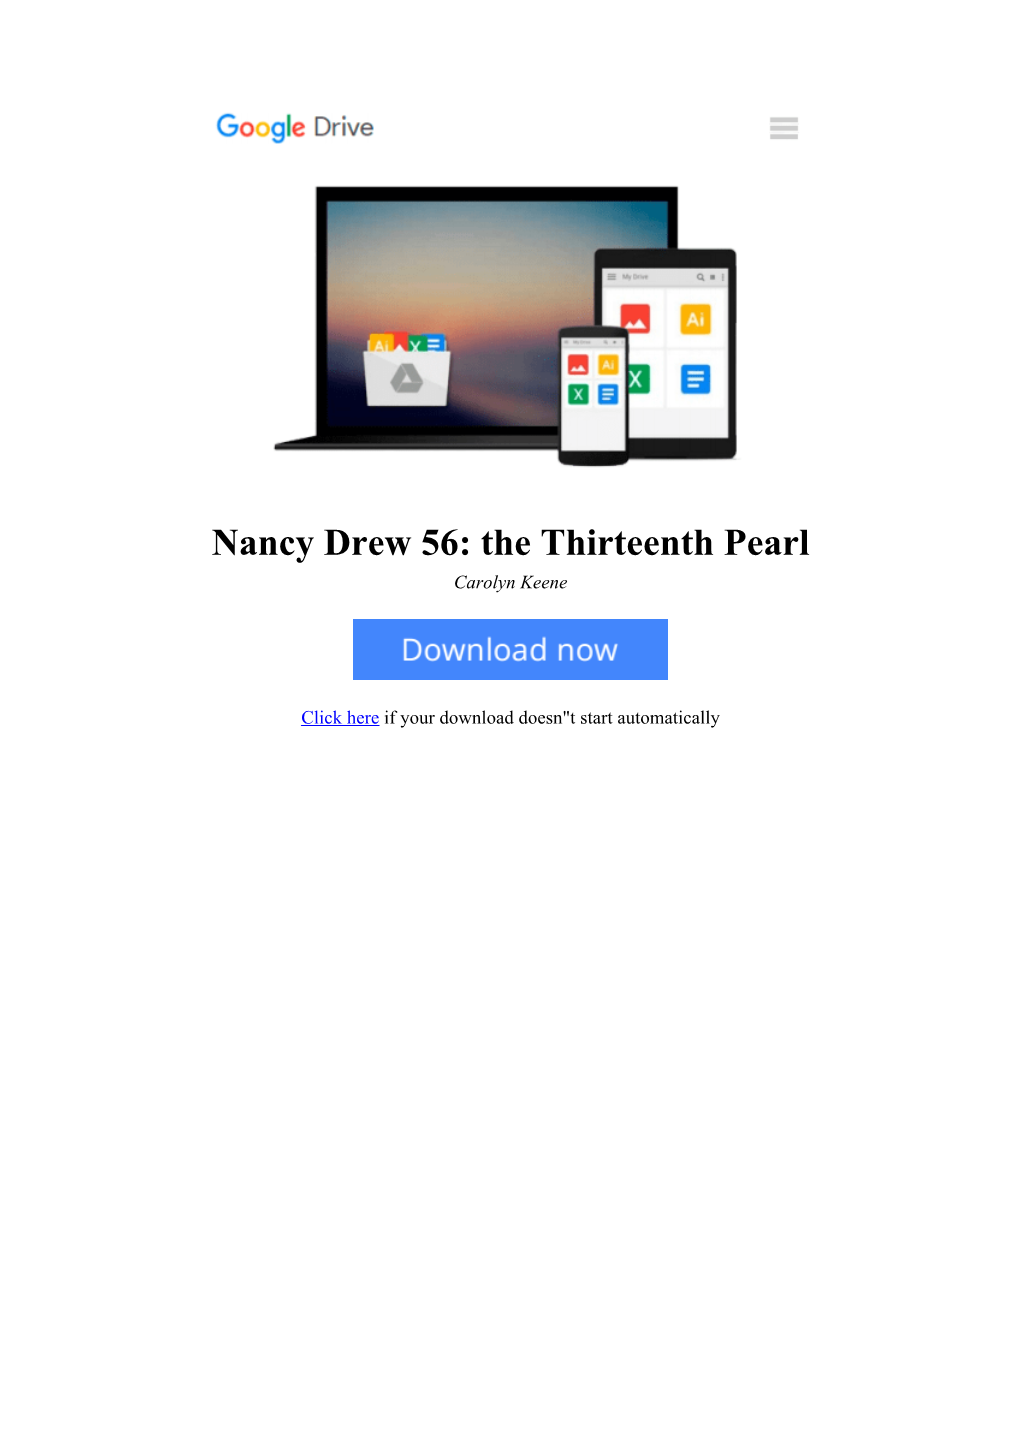 [IA5N]⋙ Nancy Drew 56: the Thirteenth Pearl by Carolyn Keene